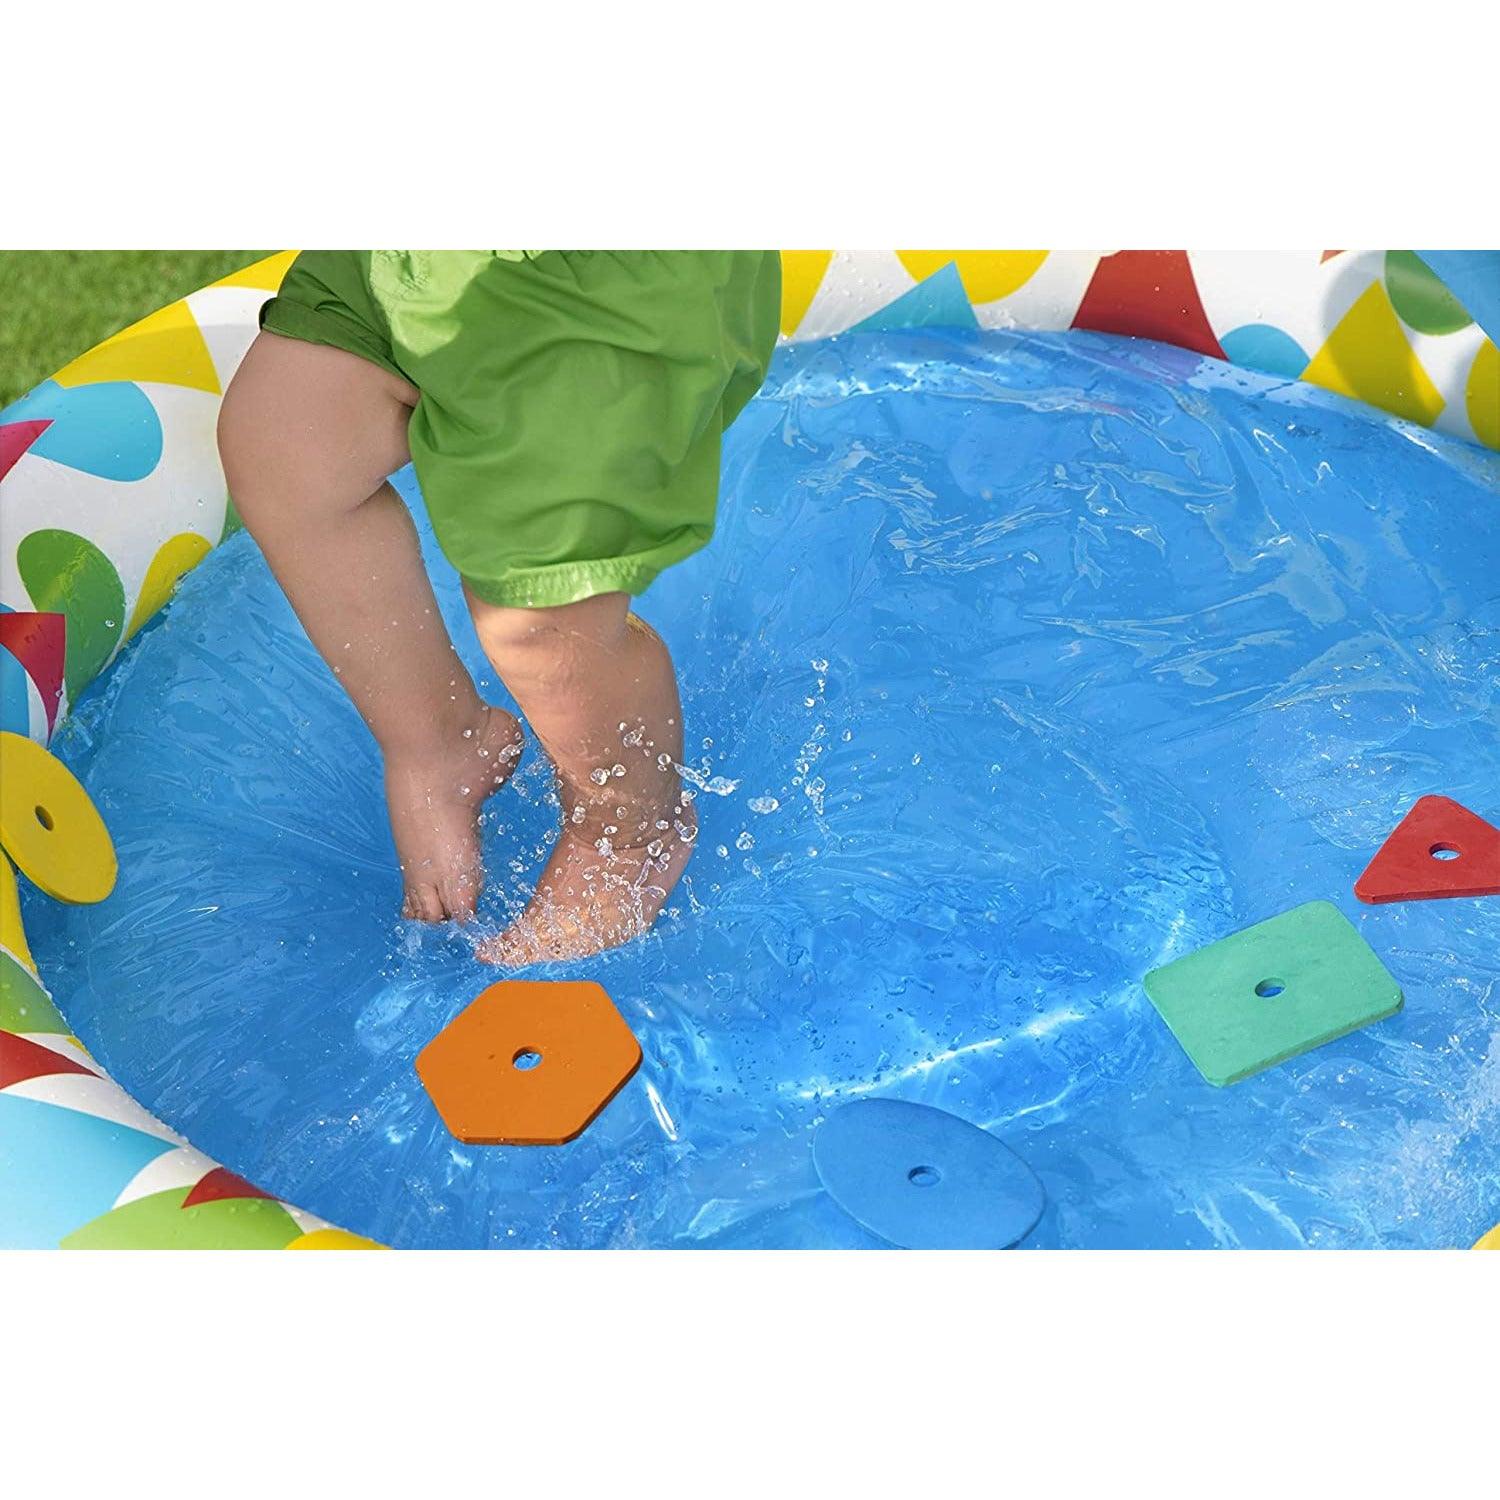 Bestway 52378 Splash & Learn Kiddie Pool‎ 120 x 117 x 46 cm - BumbleToys - 8-13 Years, Bestway, Boys, Eagle Plus, Floaters, Island, Pre-Order, Sand Toys Pools & Inflatables